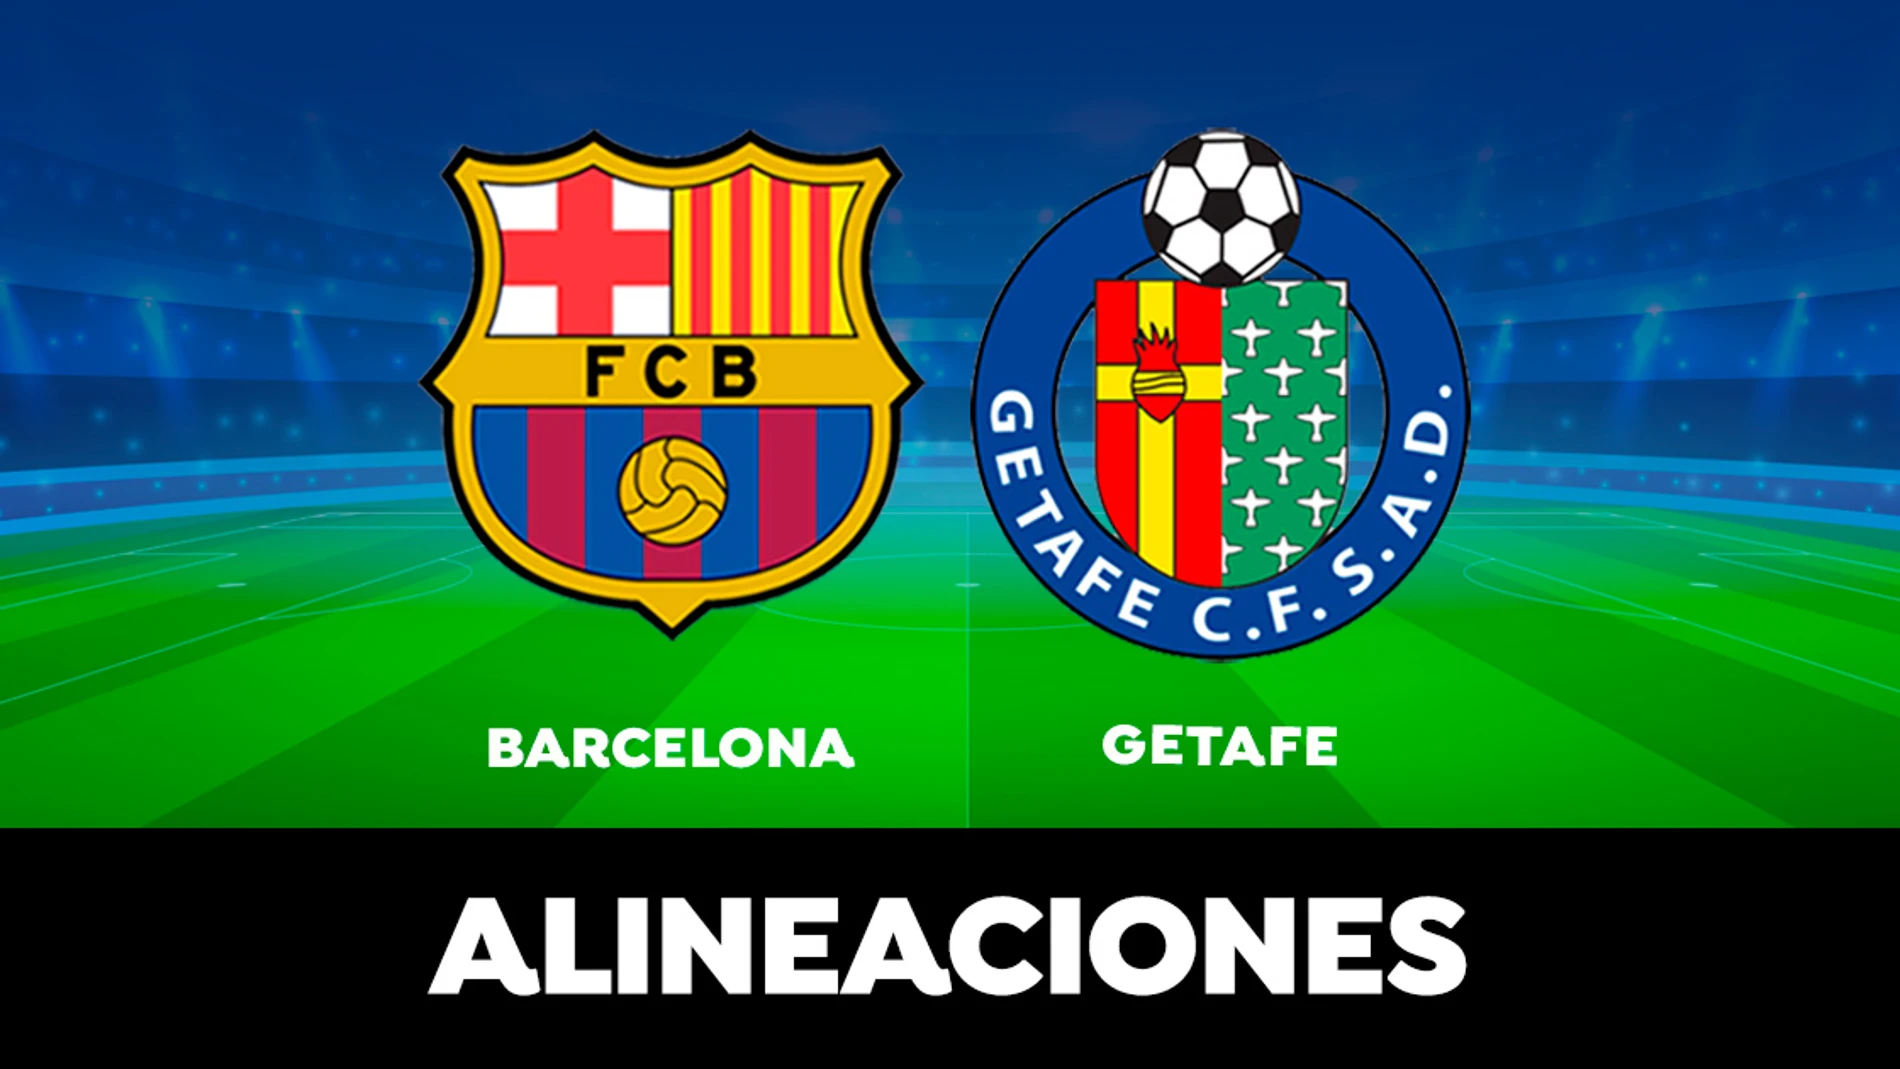 Alineacions de: getafe club de fútbol - fc barcelona